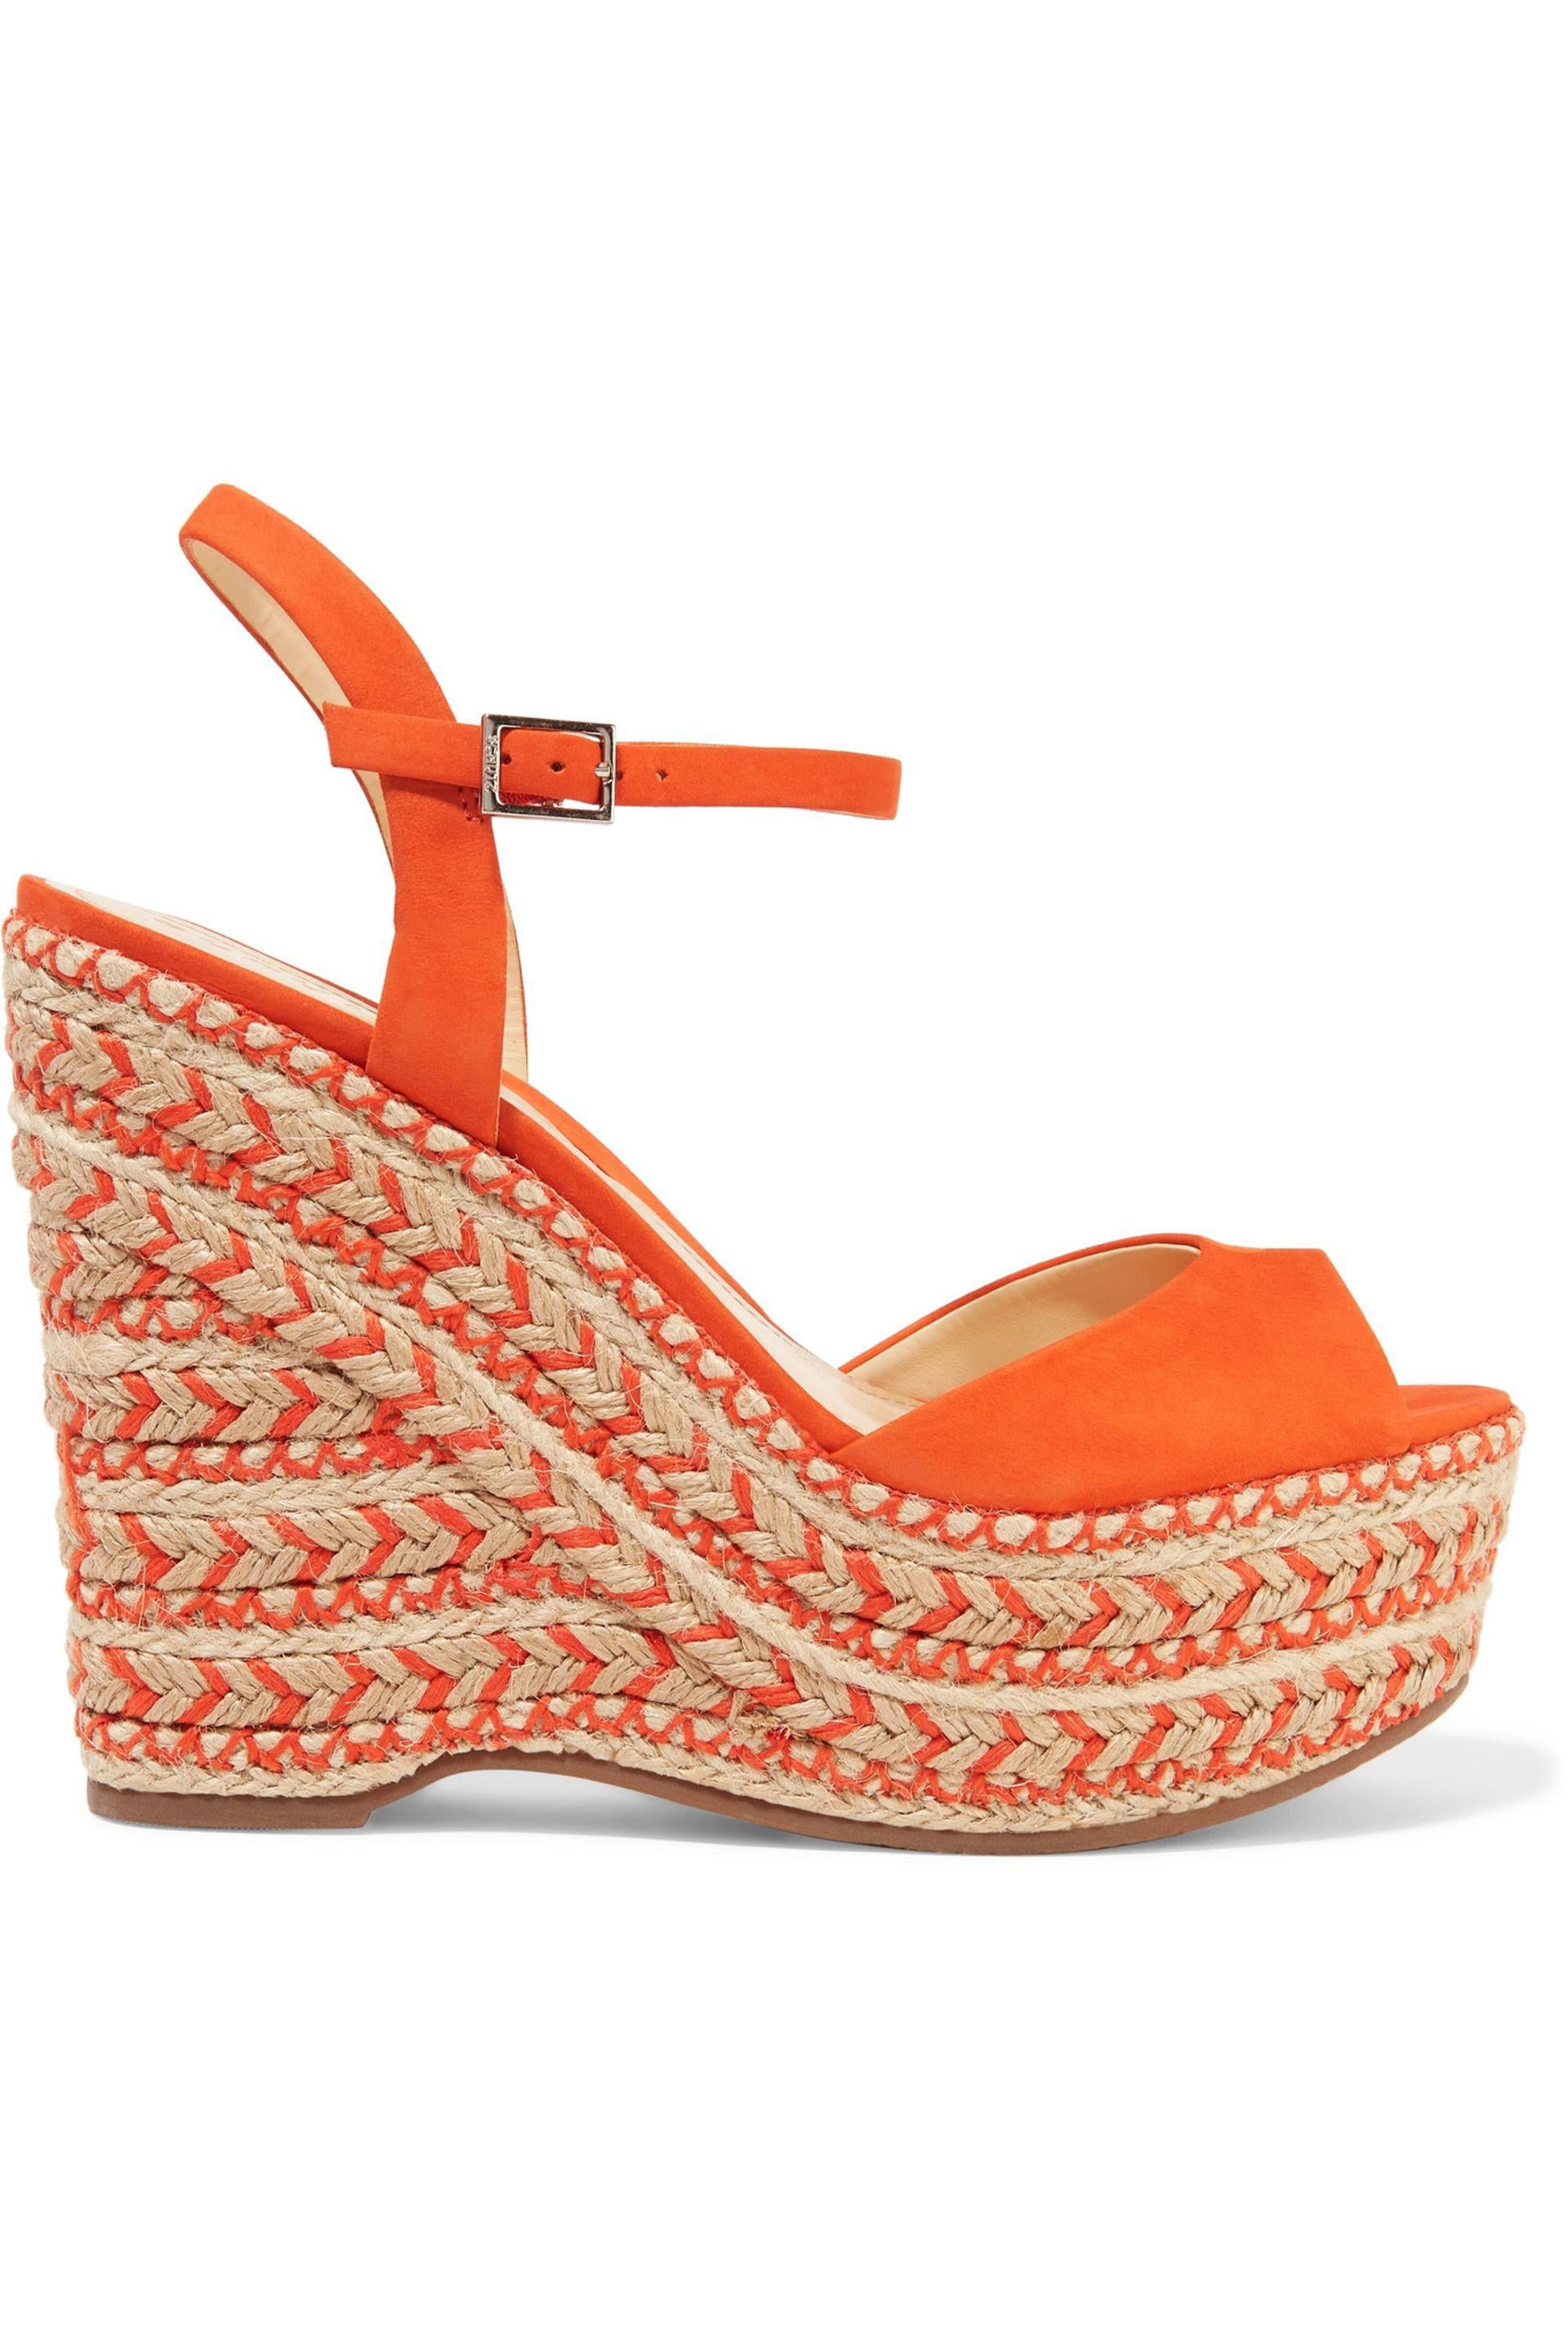 Schutz Shoes - Schutz Veridiane Autumn Orange Platform Two Tone Braided ...